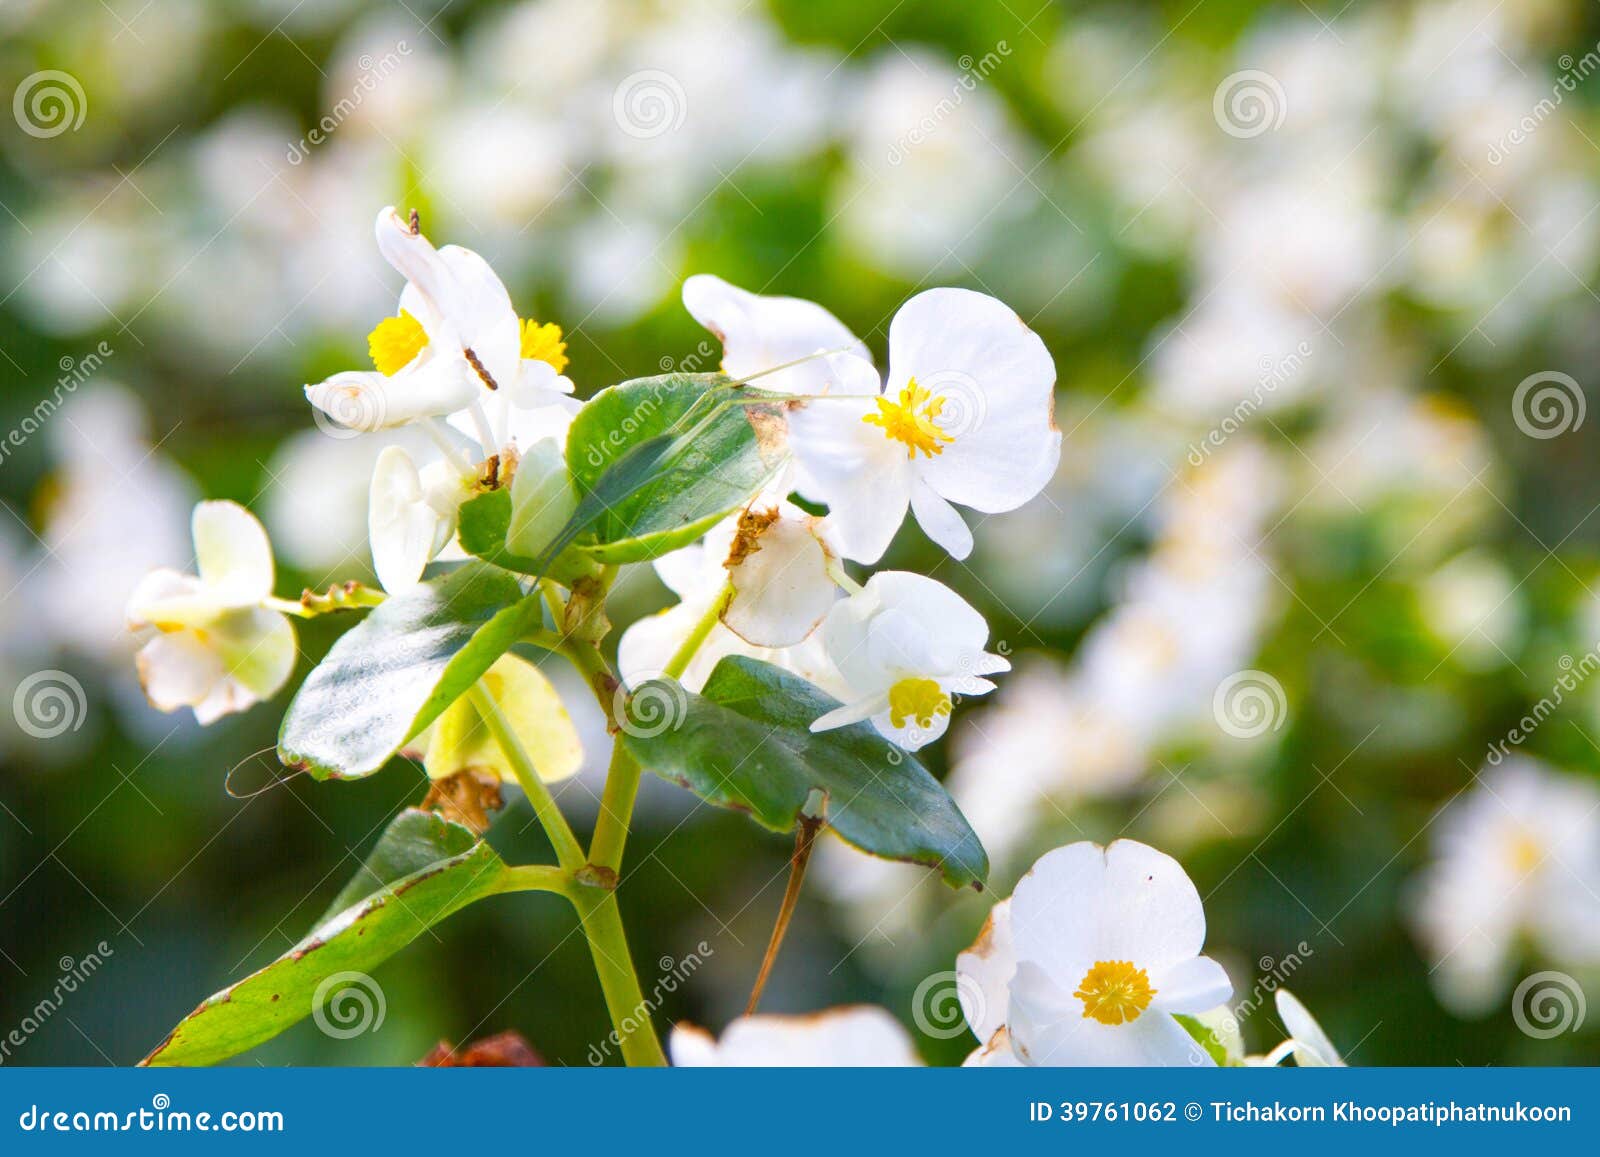 Flor branca da begônia foto de stock. Imagem de biologia - 39761062